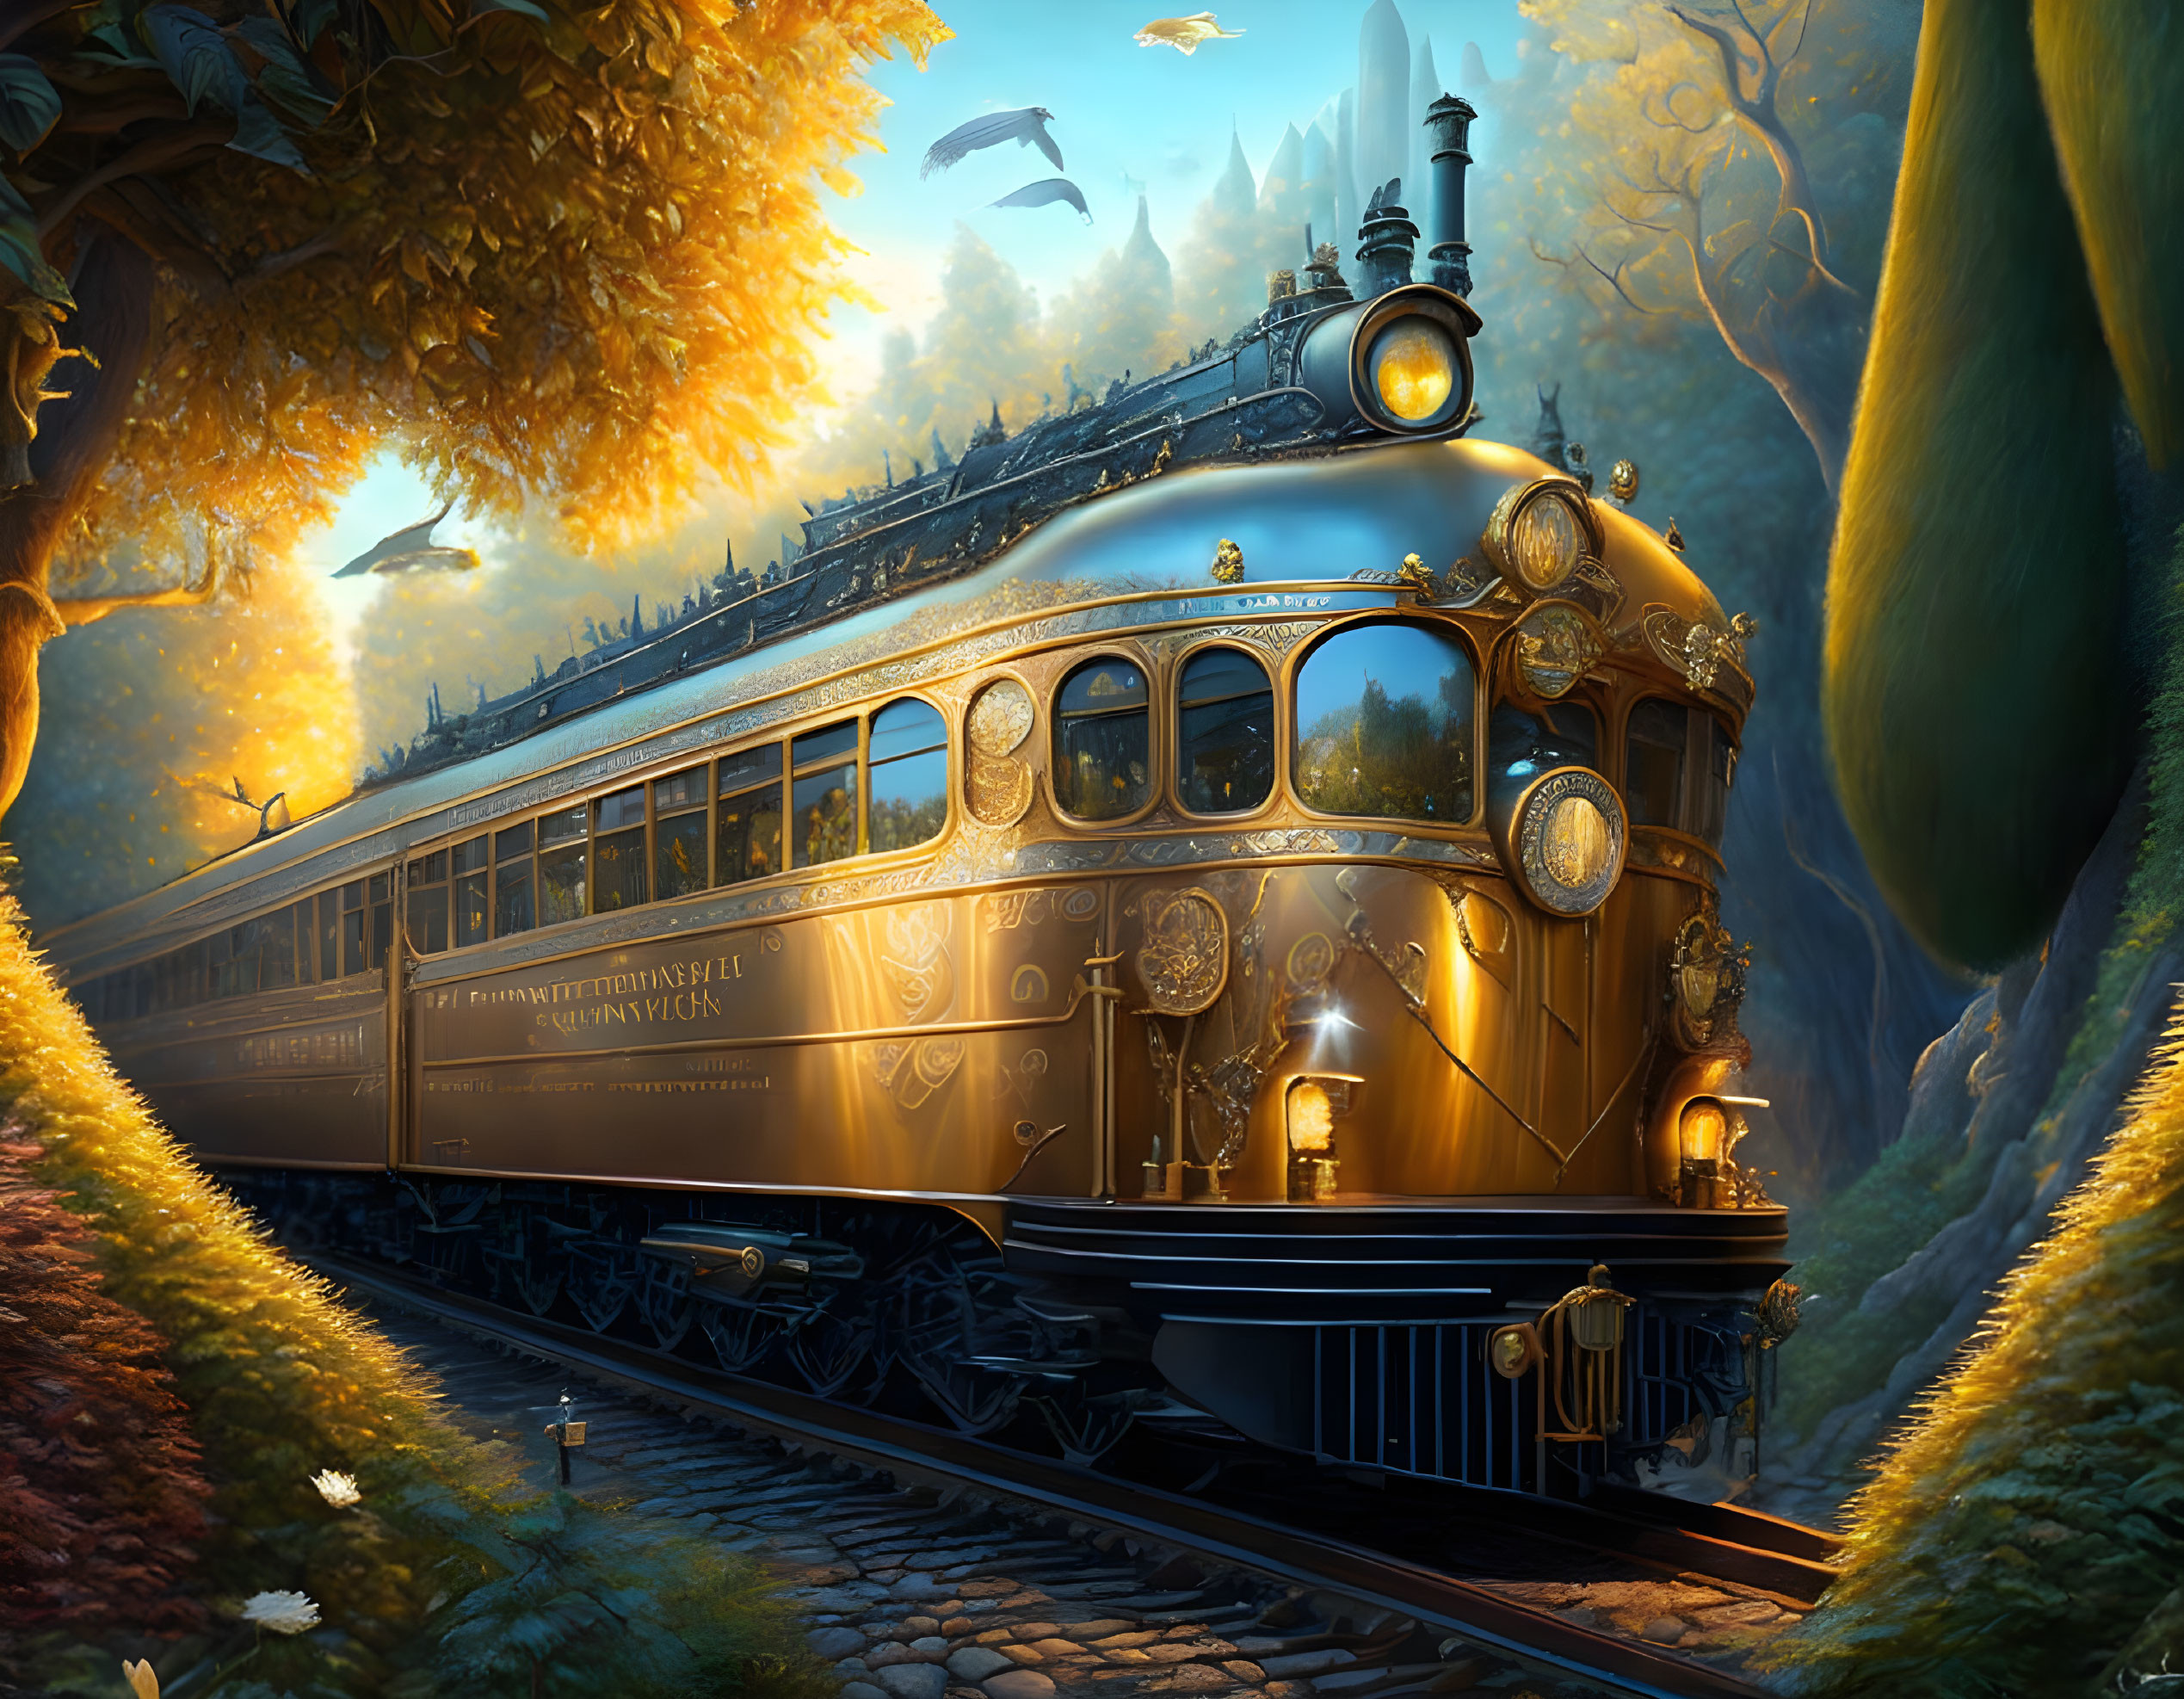 Vintage Golden Train in Enchanted Forest at Dusk